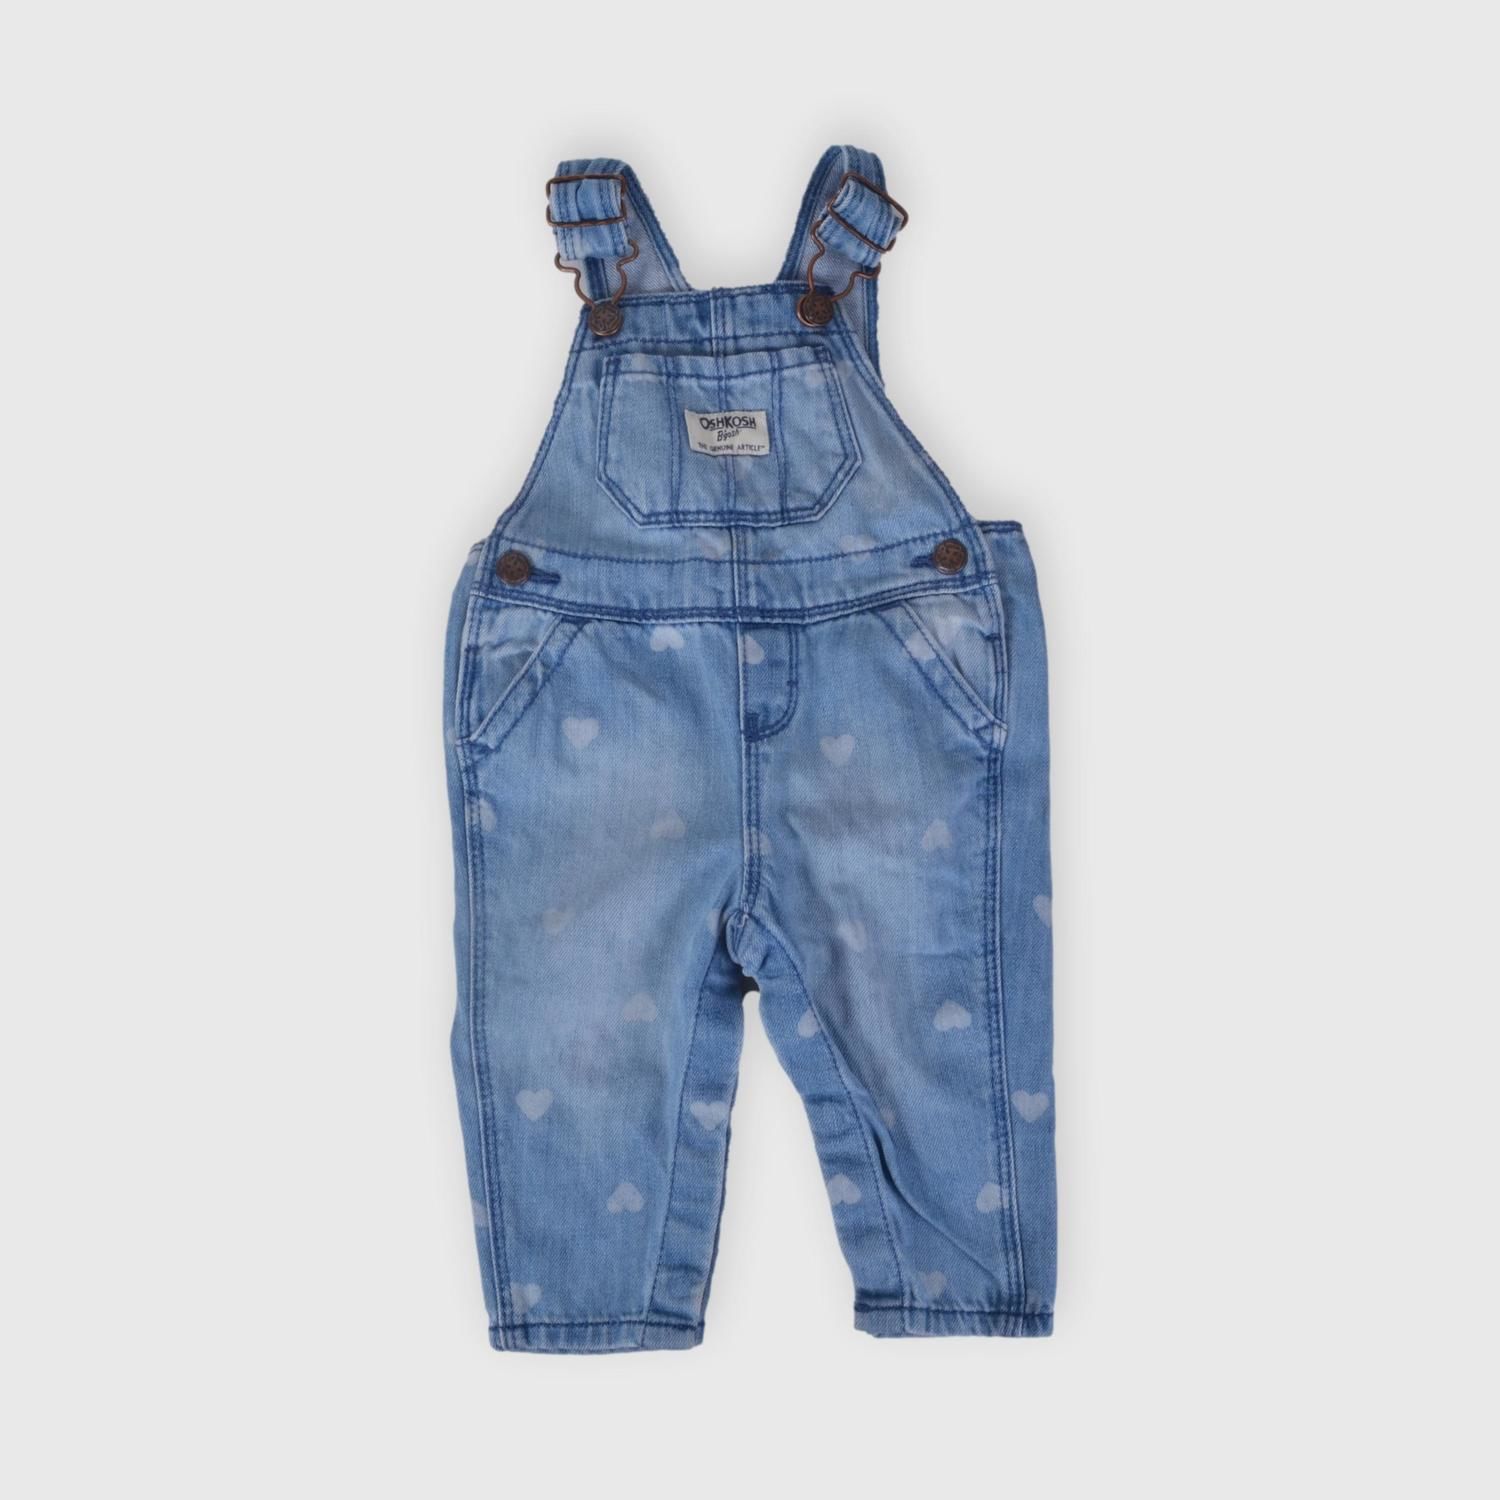 Enterito 6 m Ronda - Tienda online ropa de segunda mano para bebés y niños